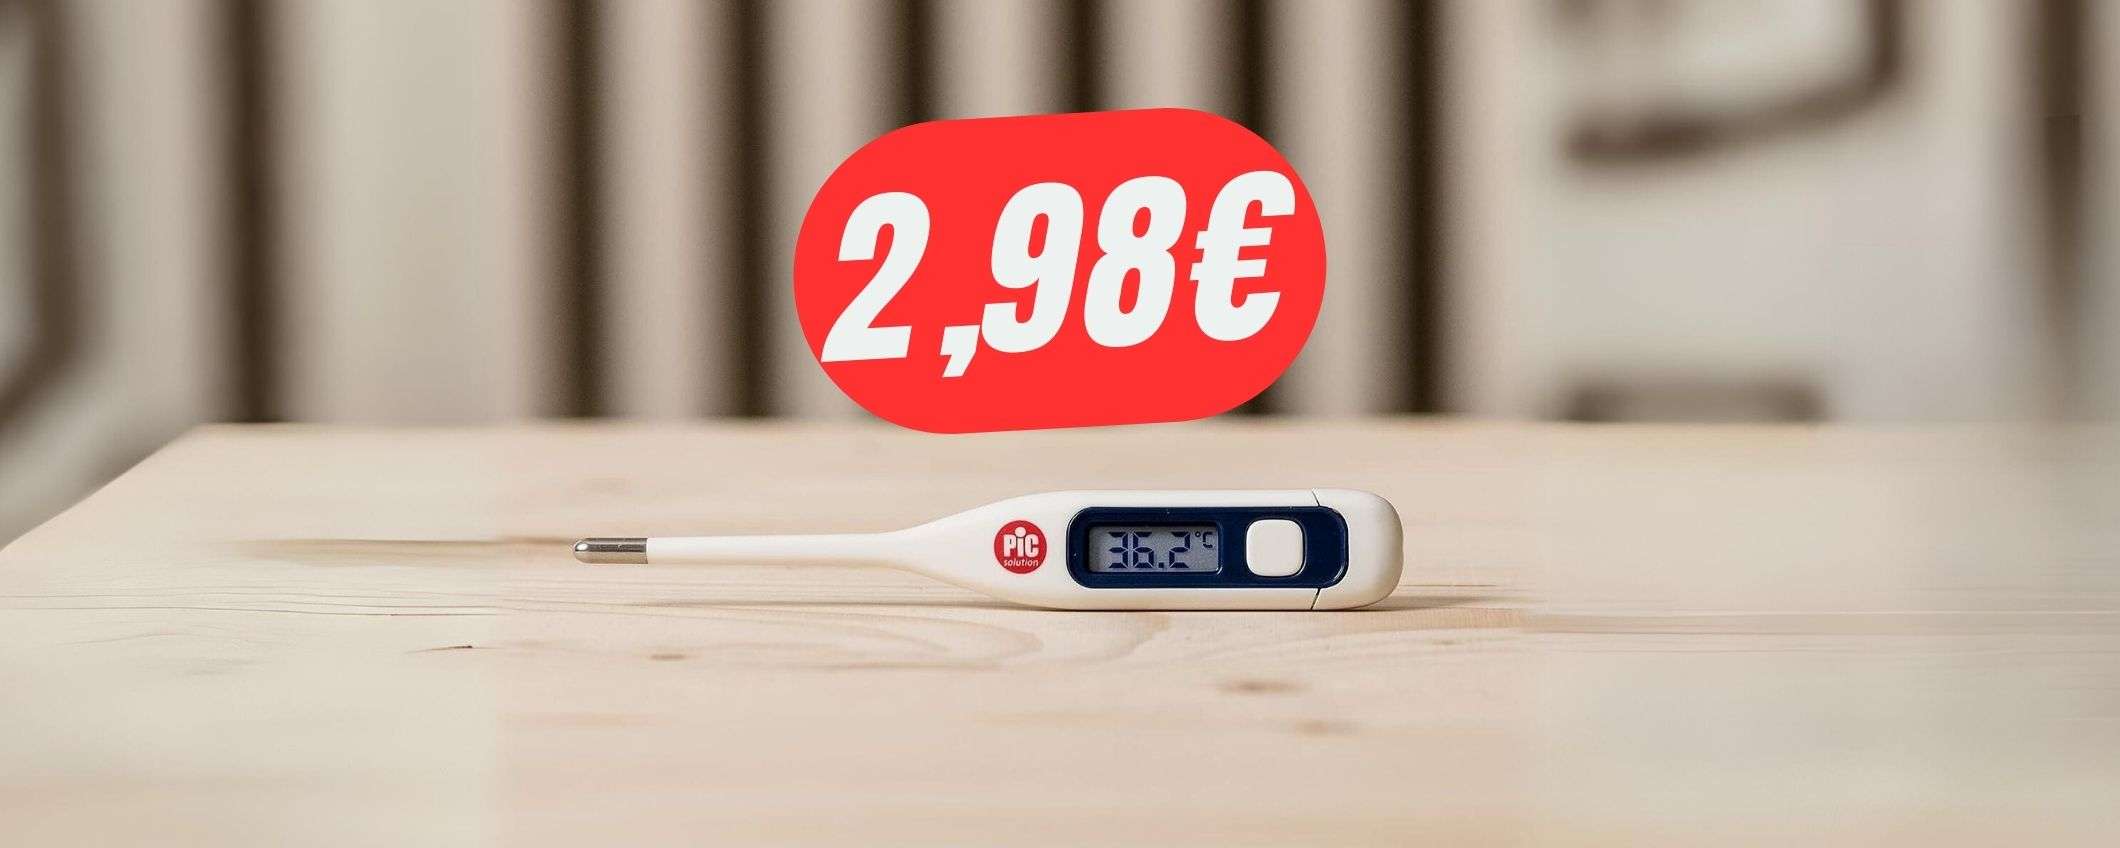 Il termometro digitale di Pic Solution a 2,98€ è REGALATO!